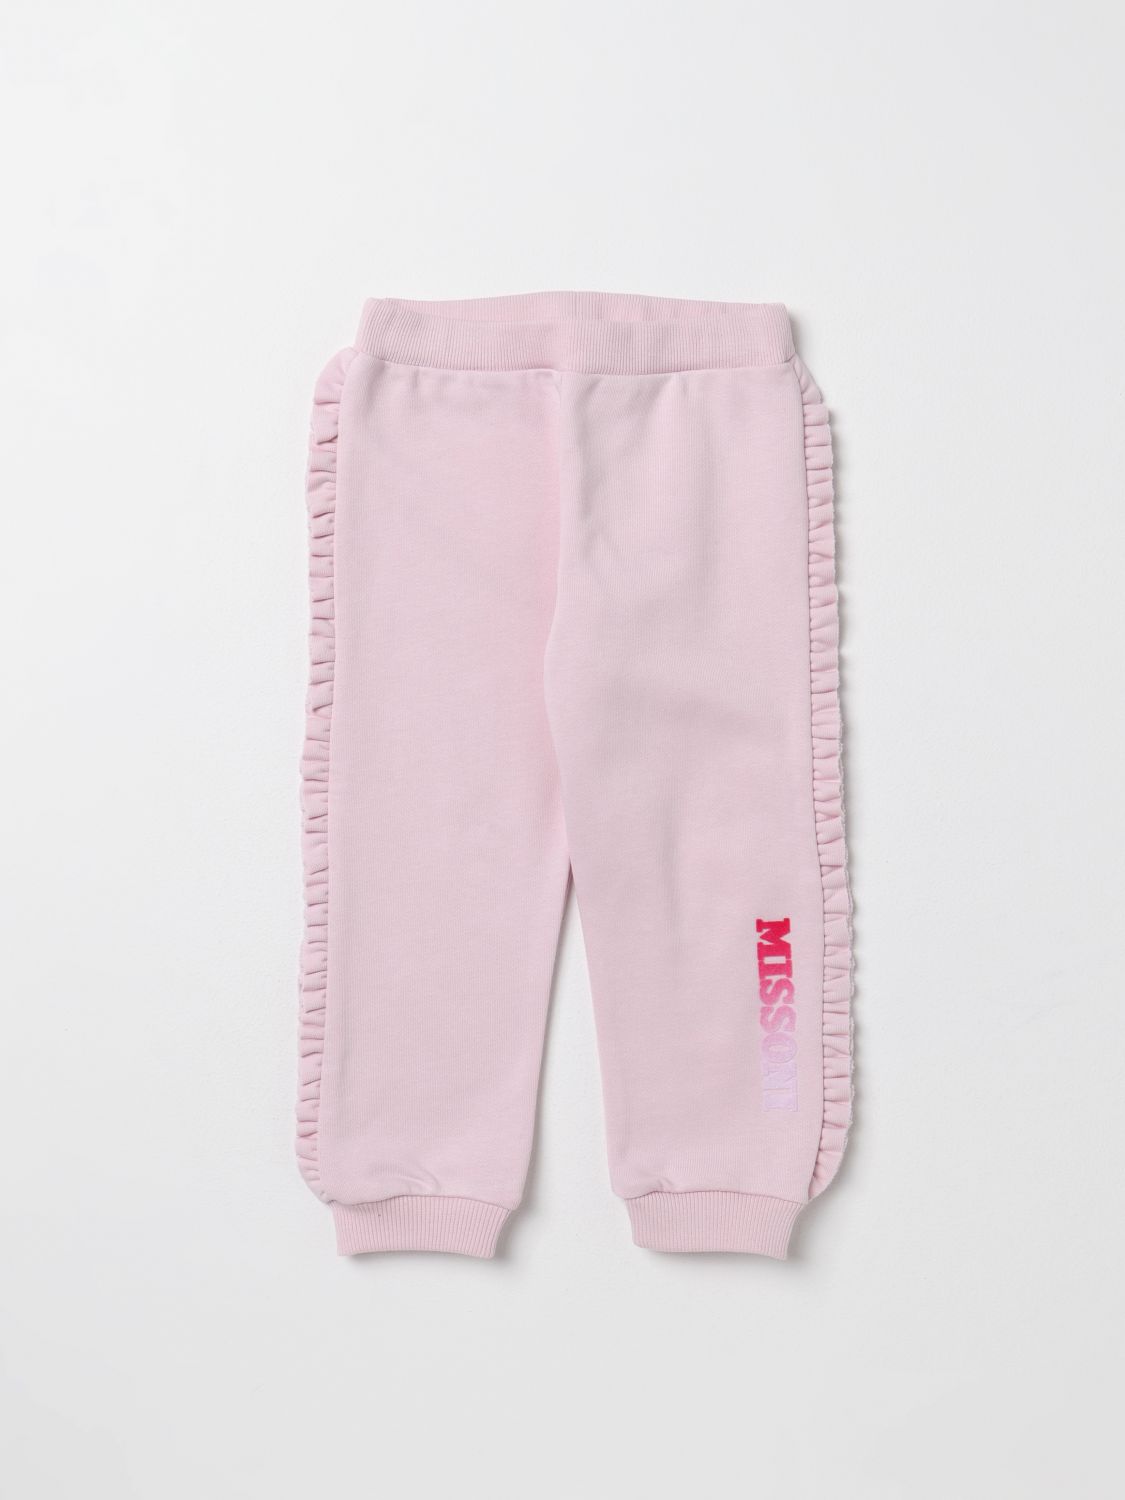 Missoni Babies' Pants  Kids Color Pink